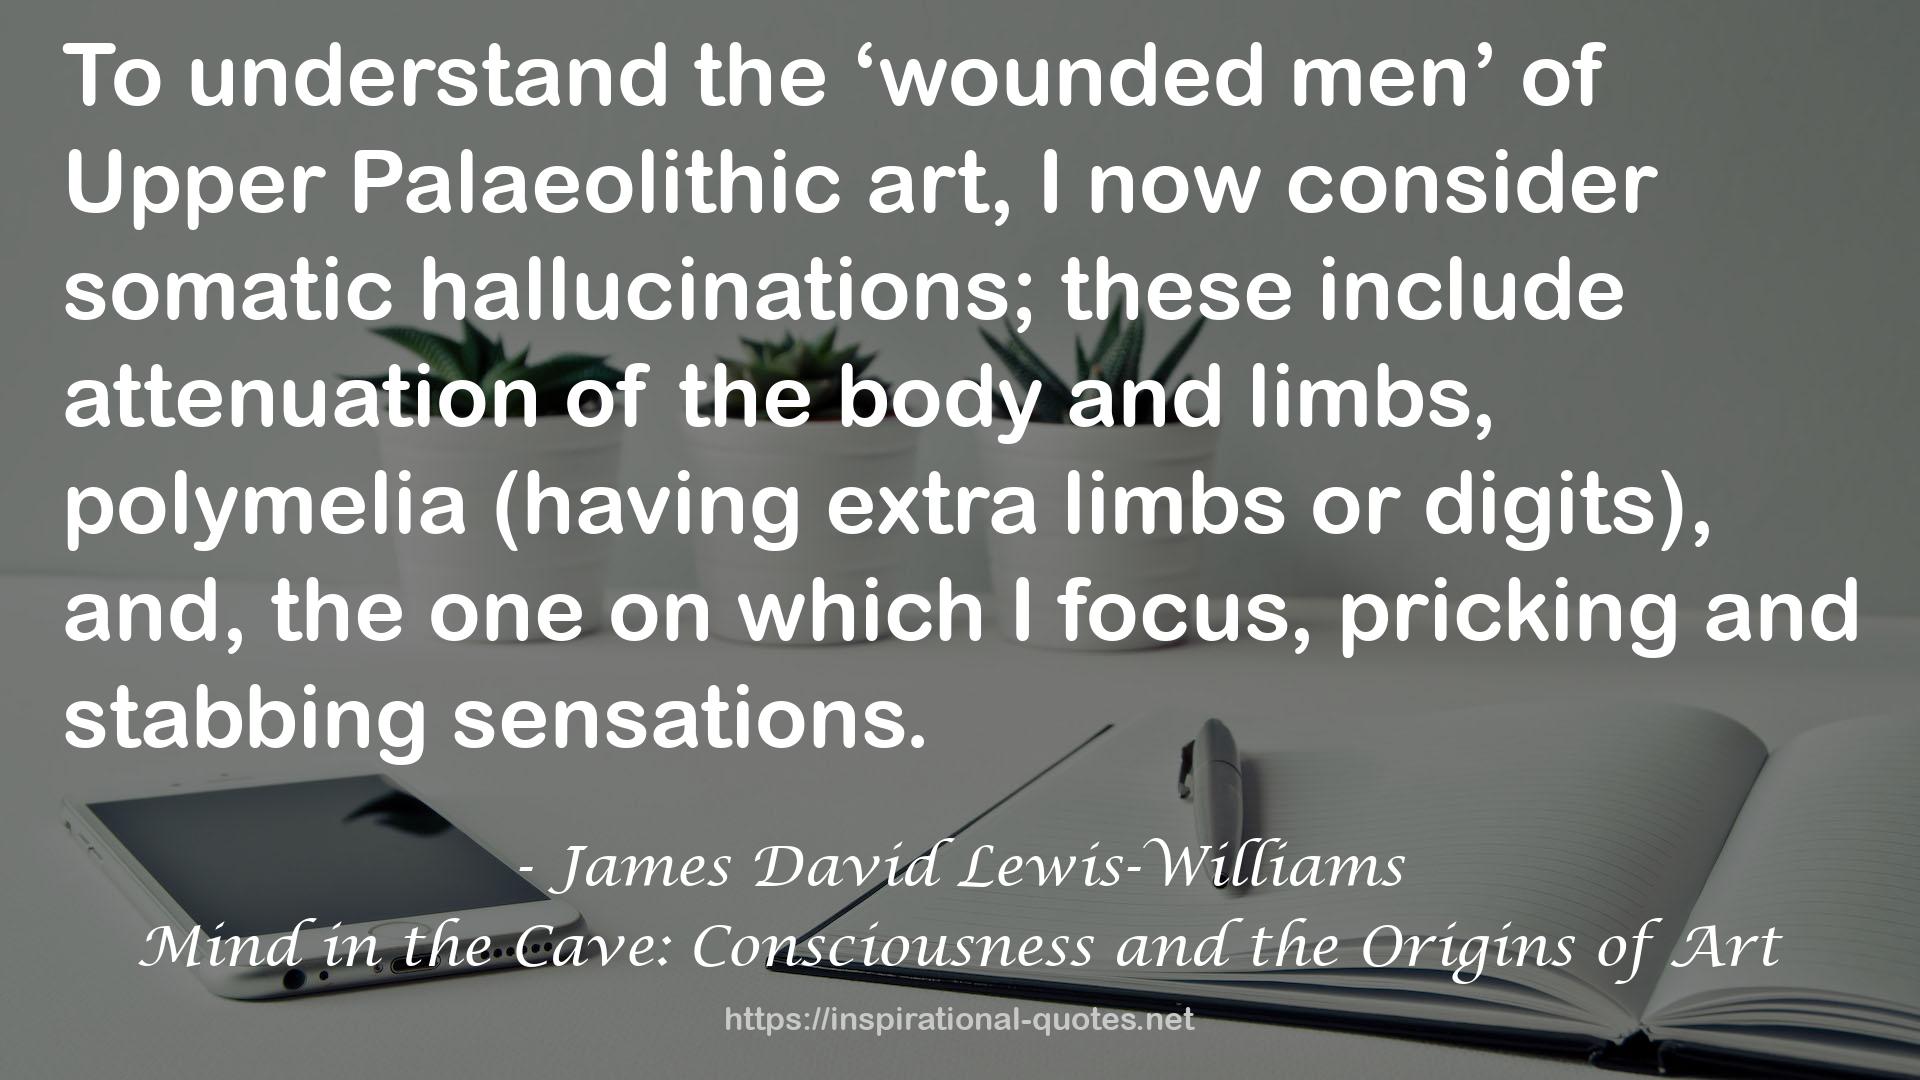 James David Lewis-Williams QUOTES